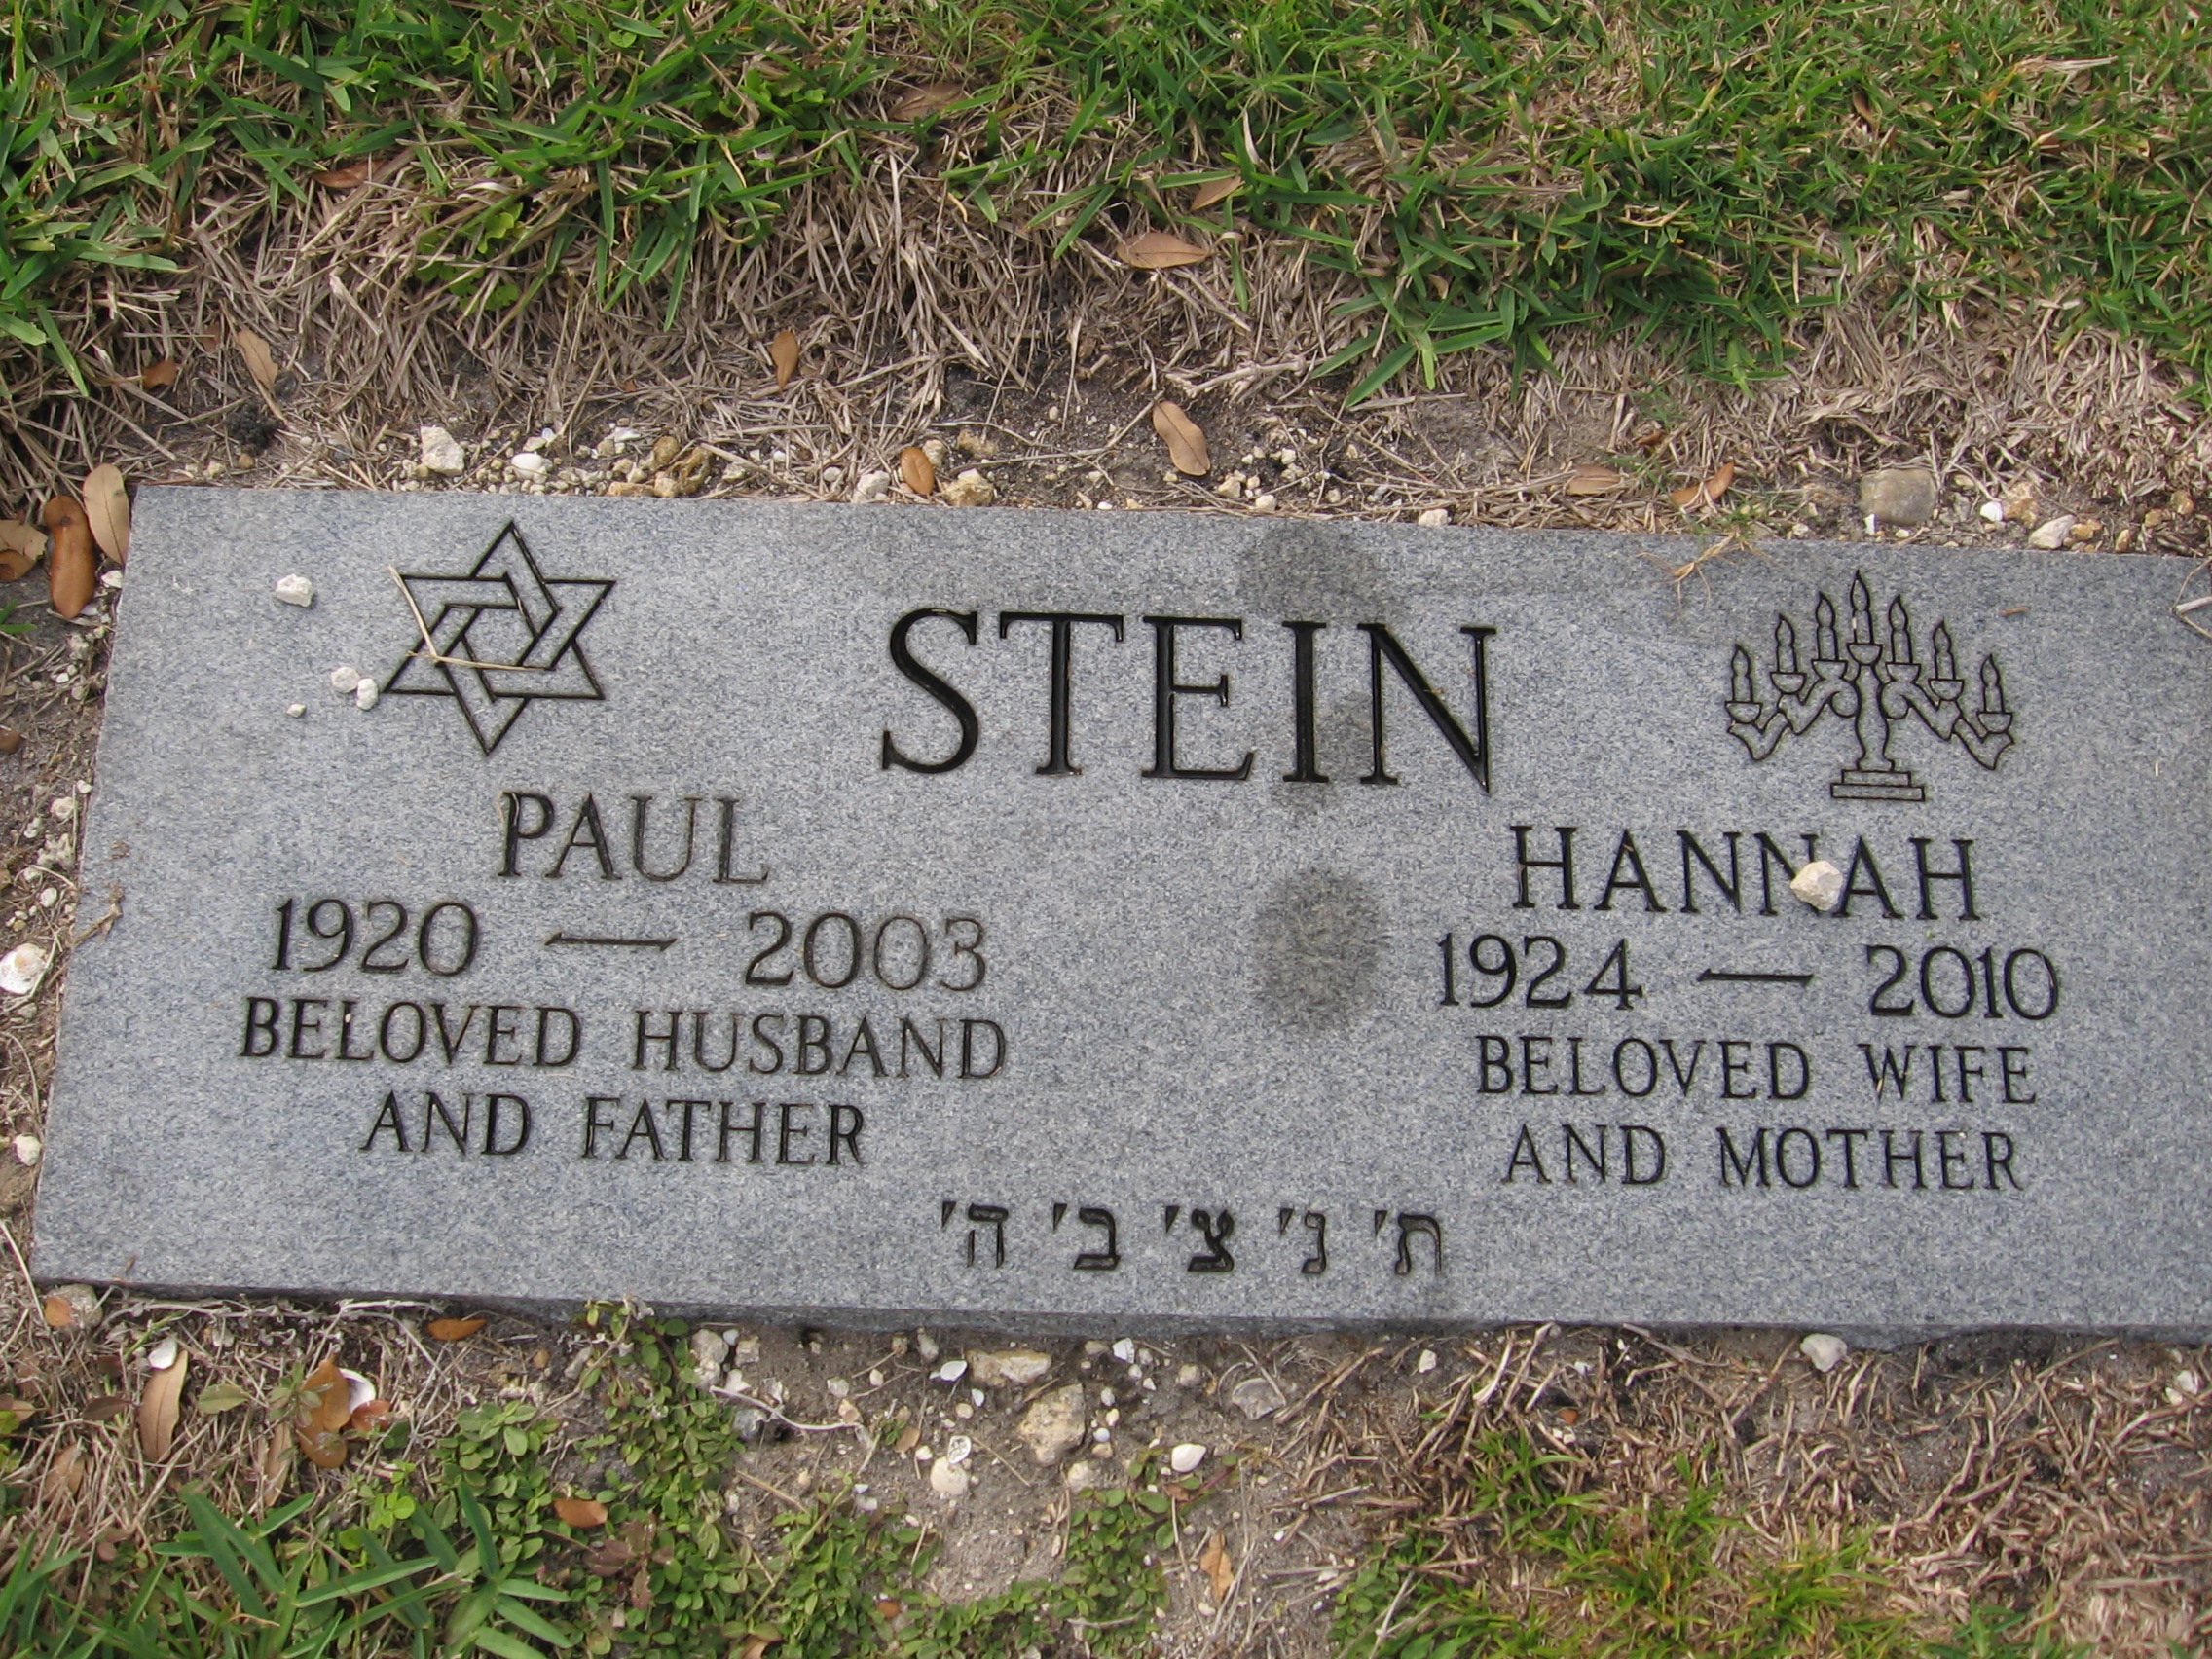 Paul Stein